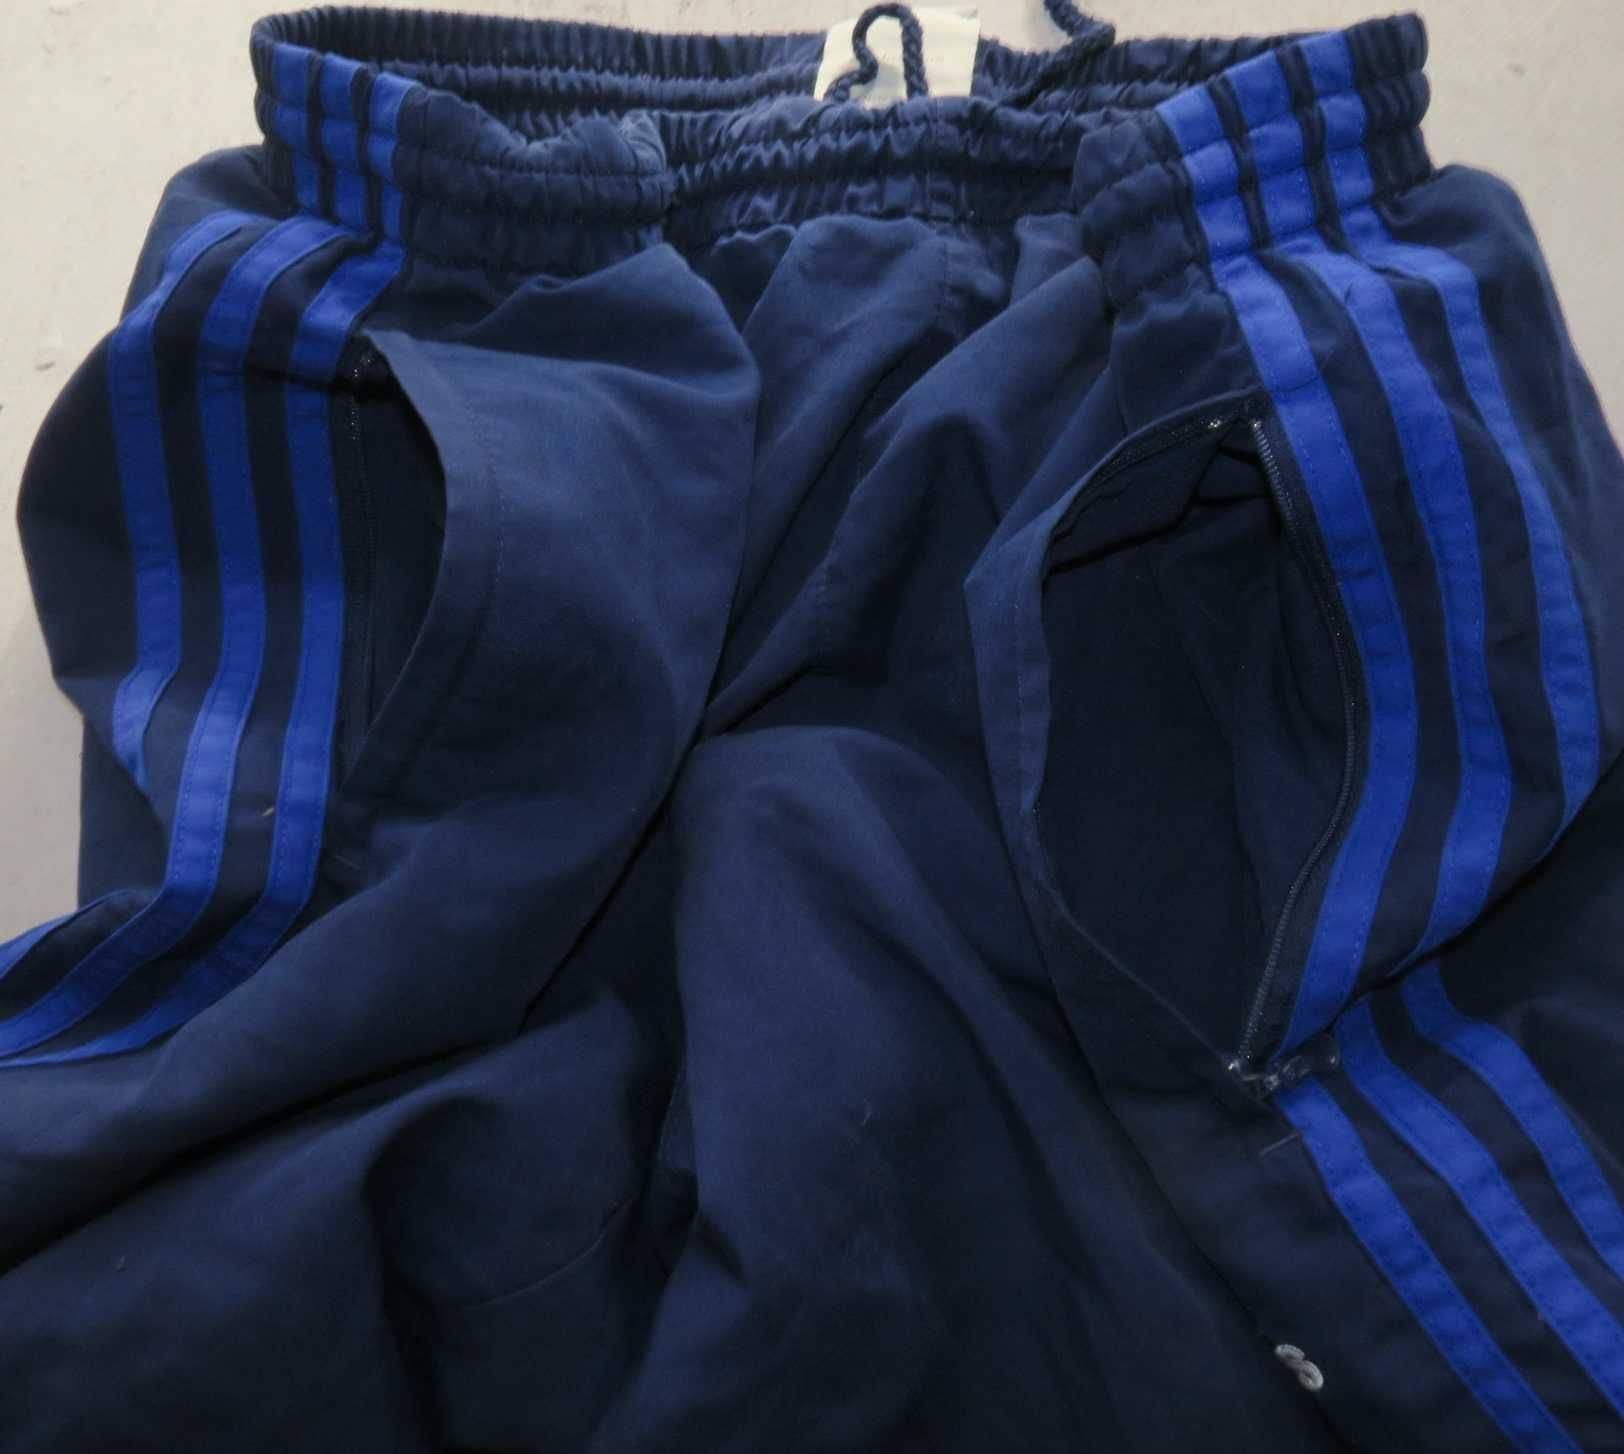 Adidas spodnie dresowe XL